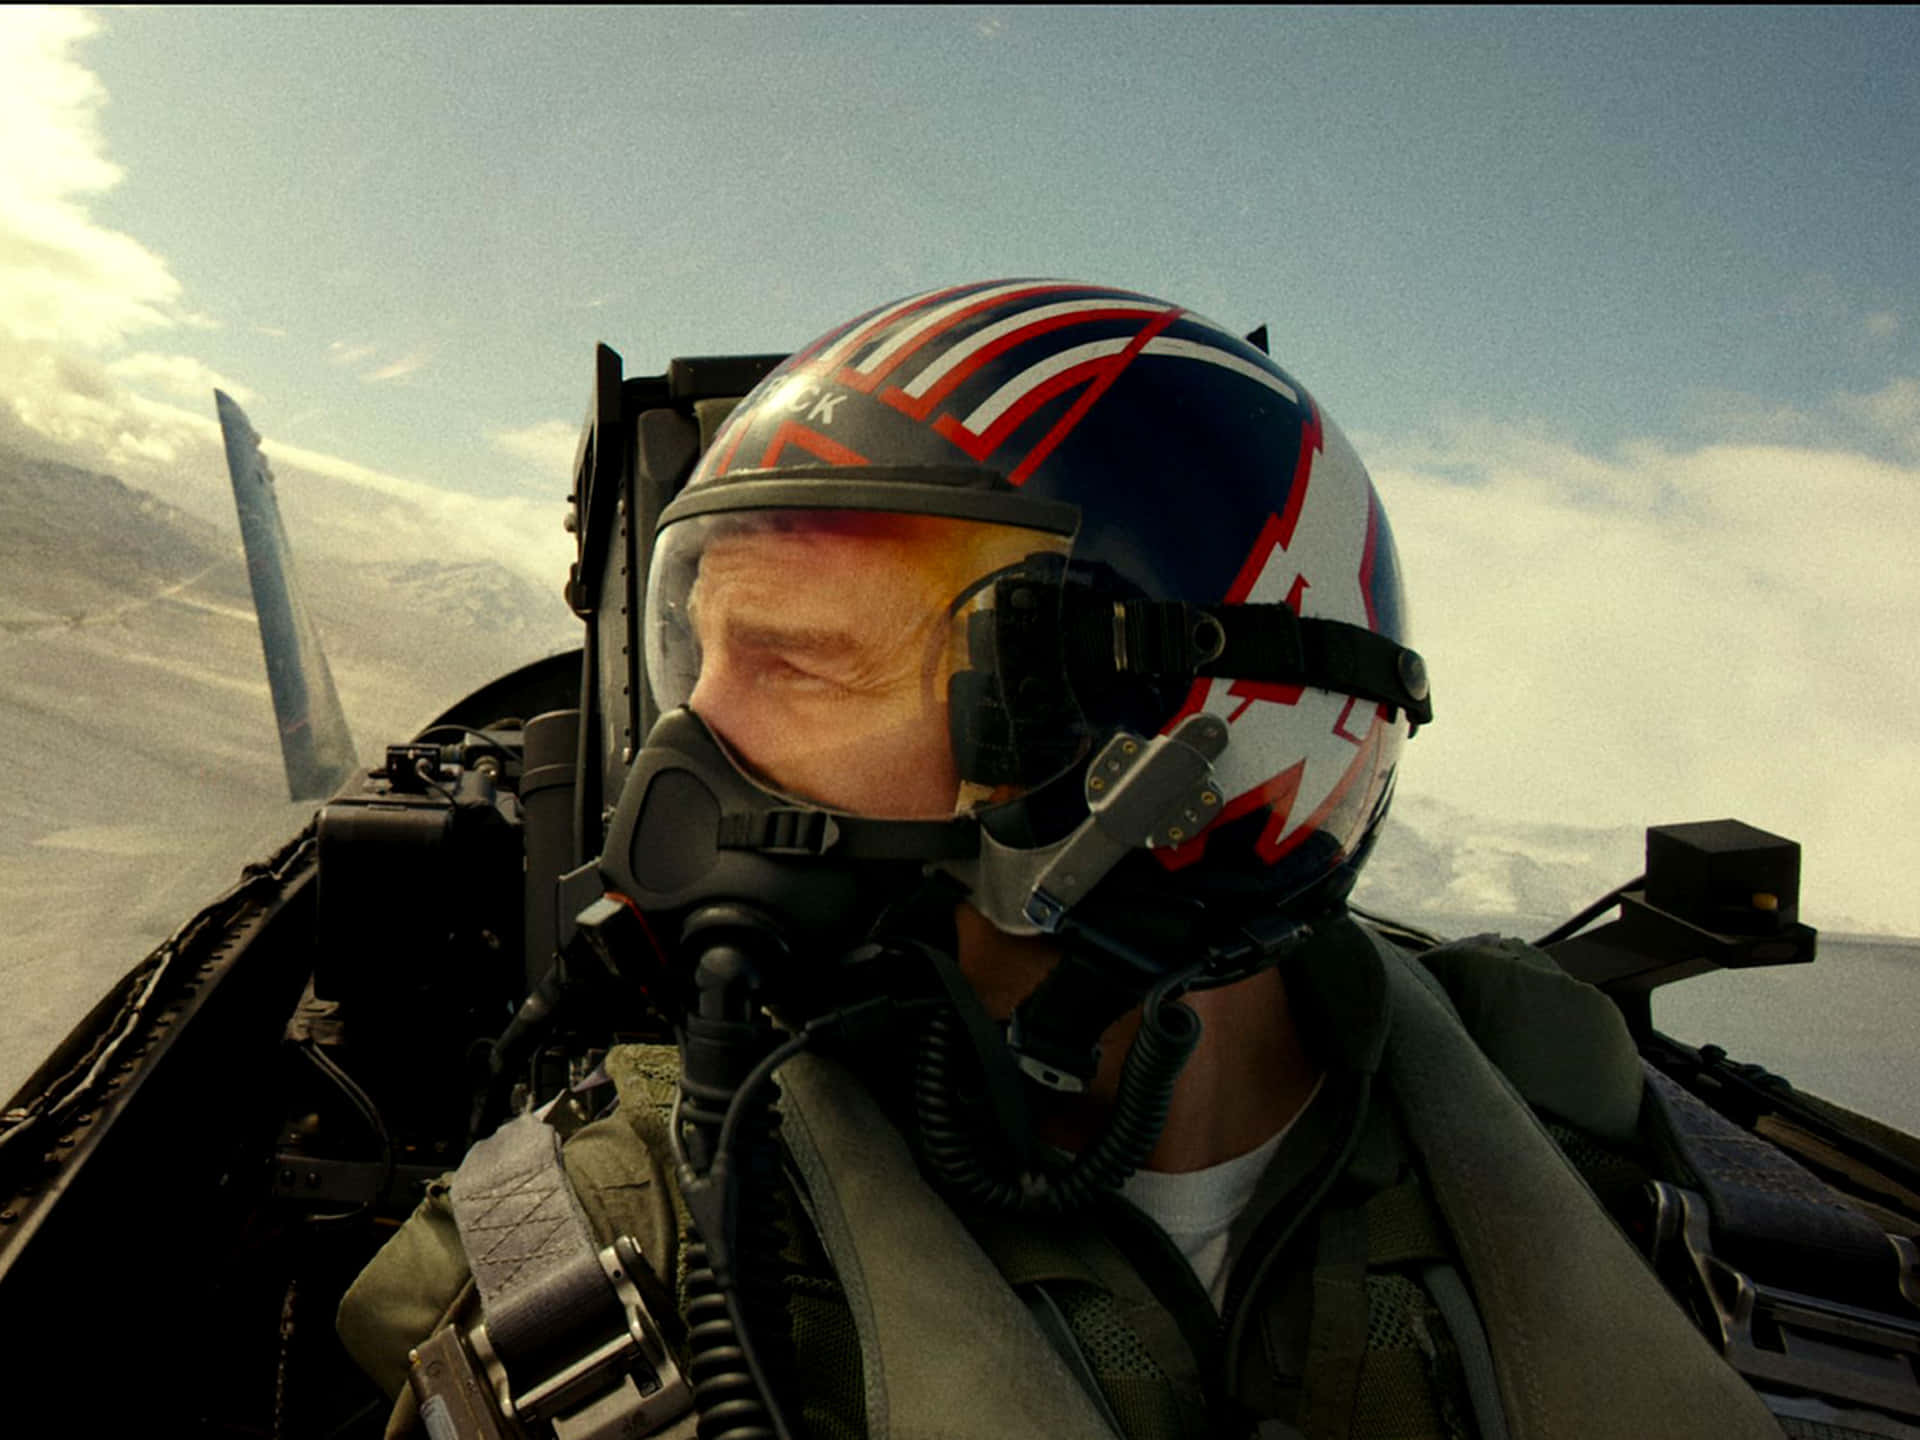 Imagende Top Gun F15 Eagle